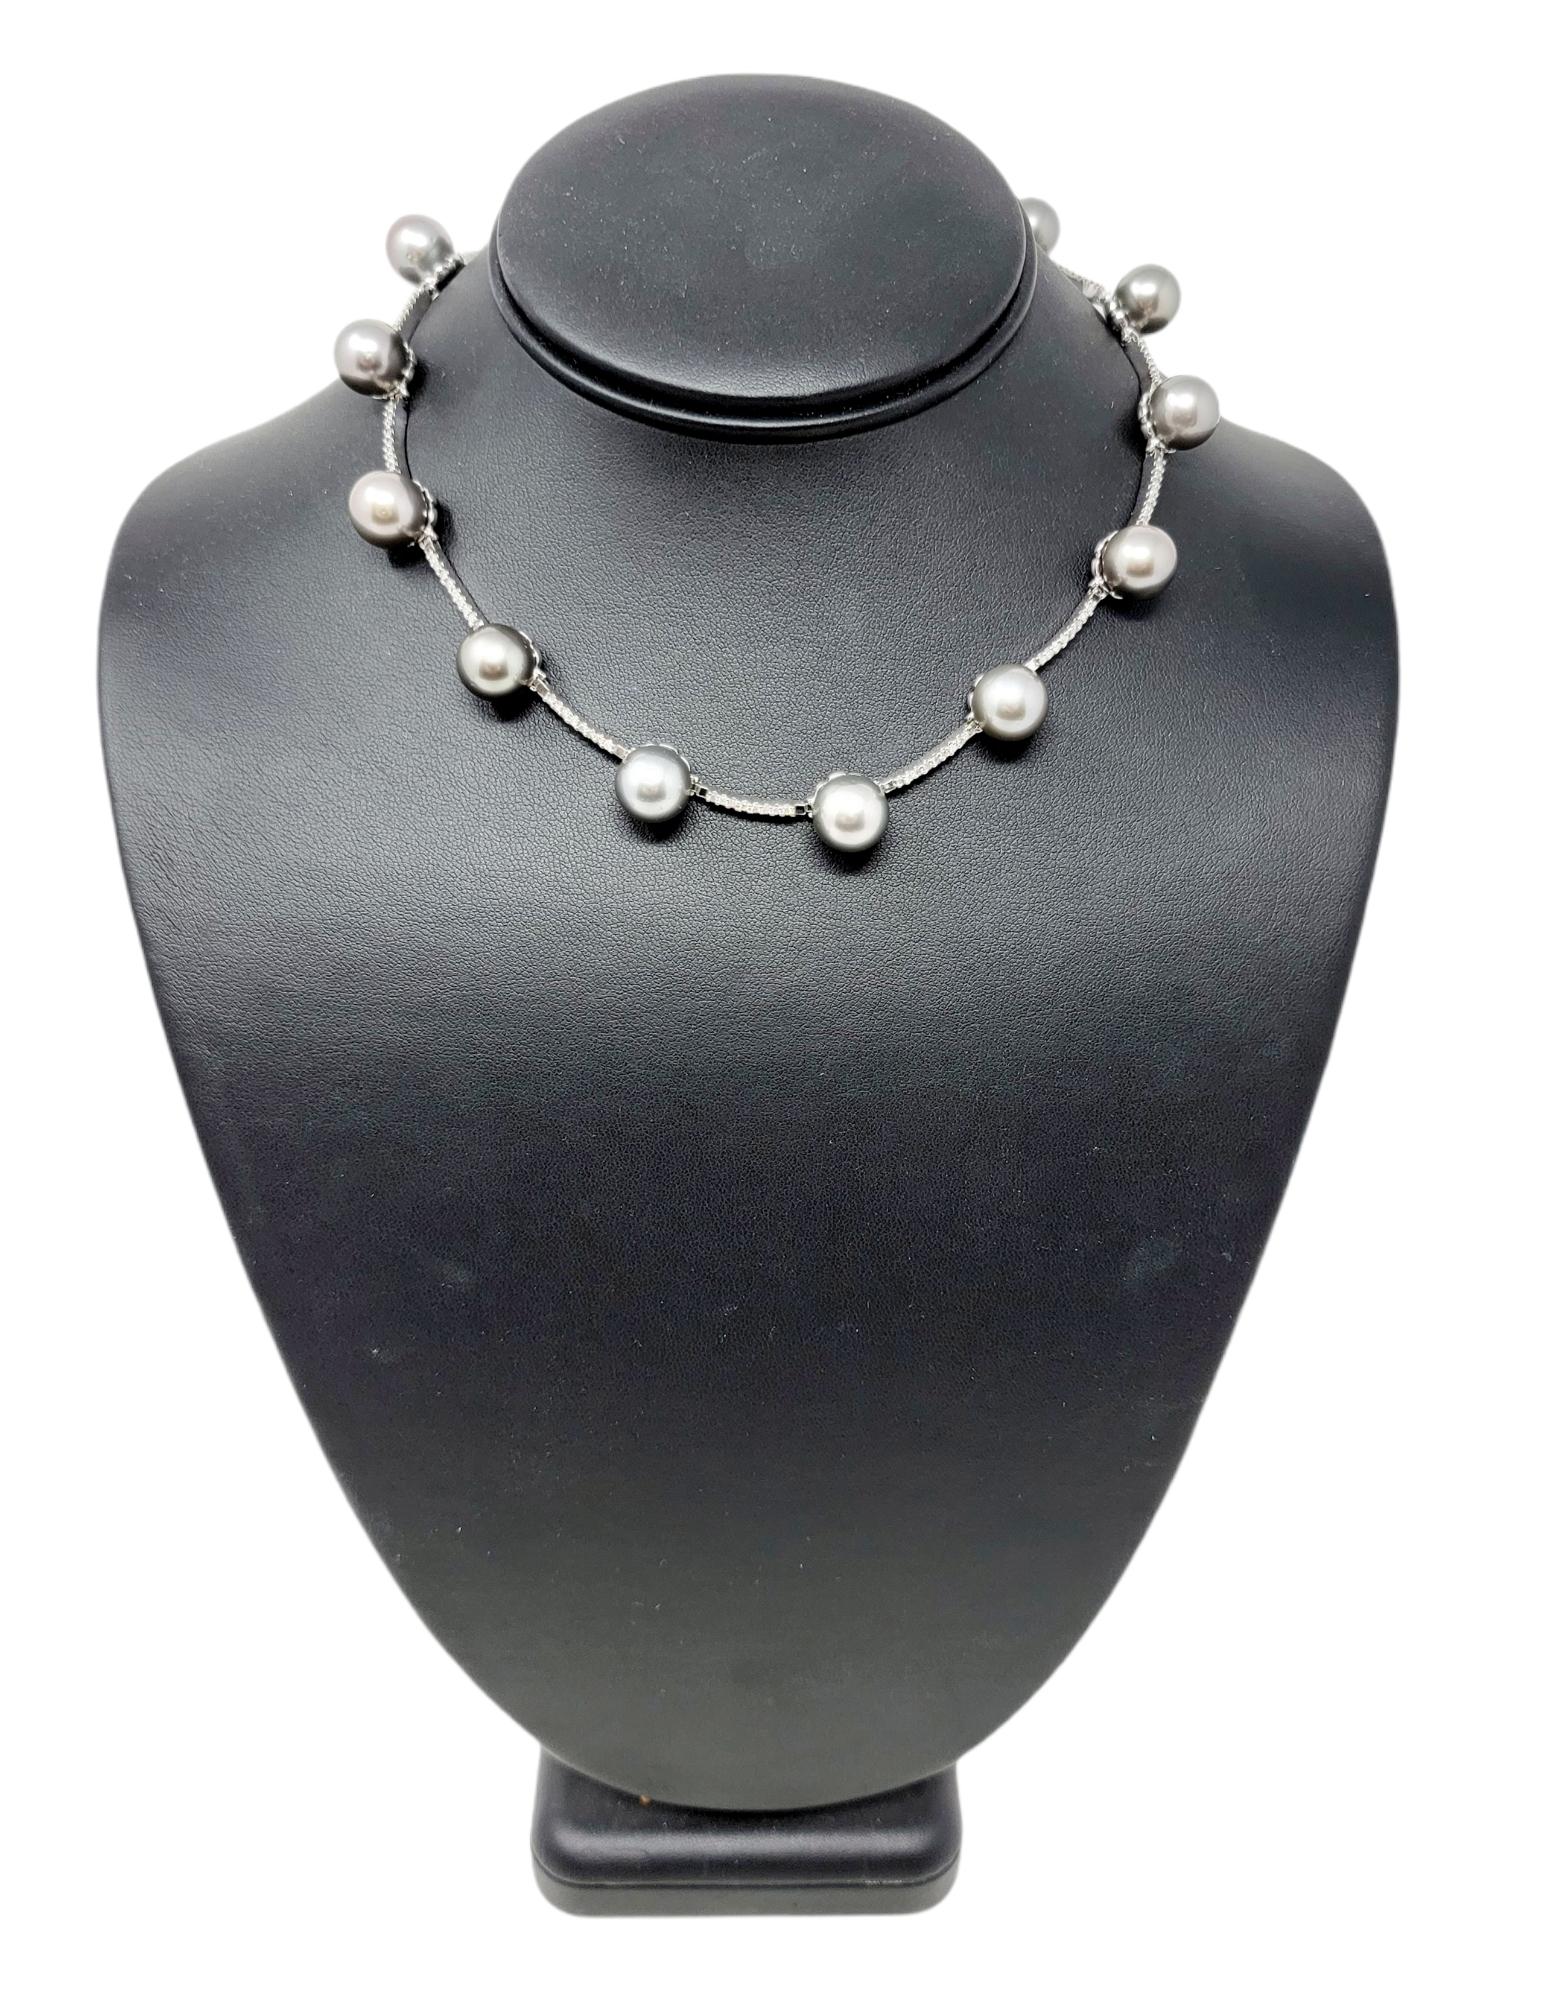 Die moderne Halskette mit Diamanten und Perlen ist ein elegantes Accessoire für den Hals. Die mit Diamanten besetzten Stangenglieder in Kombination mit den atemberaubenden Silberperlen sind ein wahrer Augenschmaus. Sie besteht aus 14